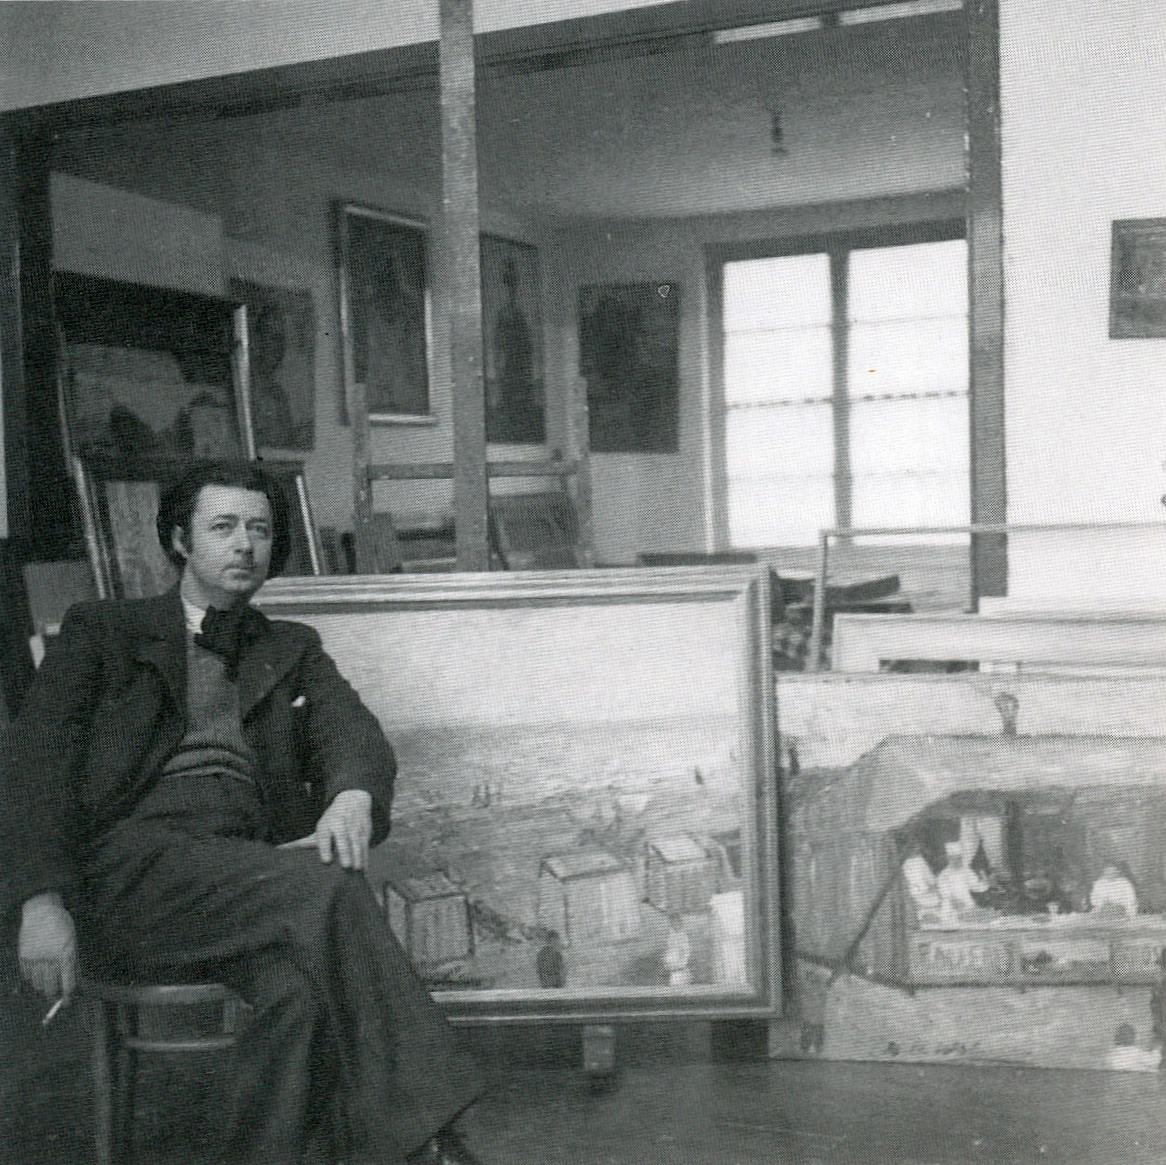 Wolvens dans son atelier, avenue des Cerisiers à Woluwe-Saint-Lambert - années 1940-1950